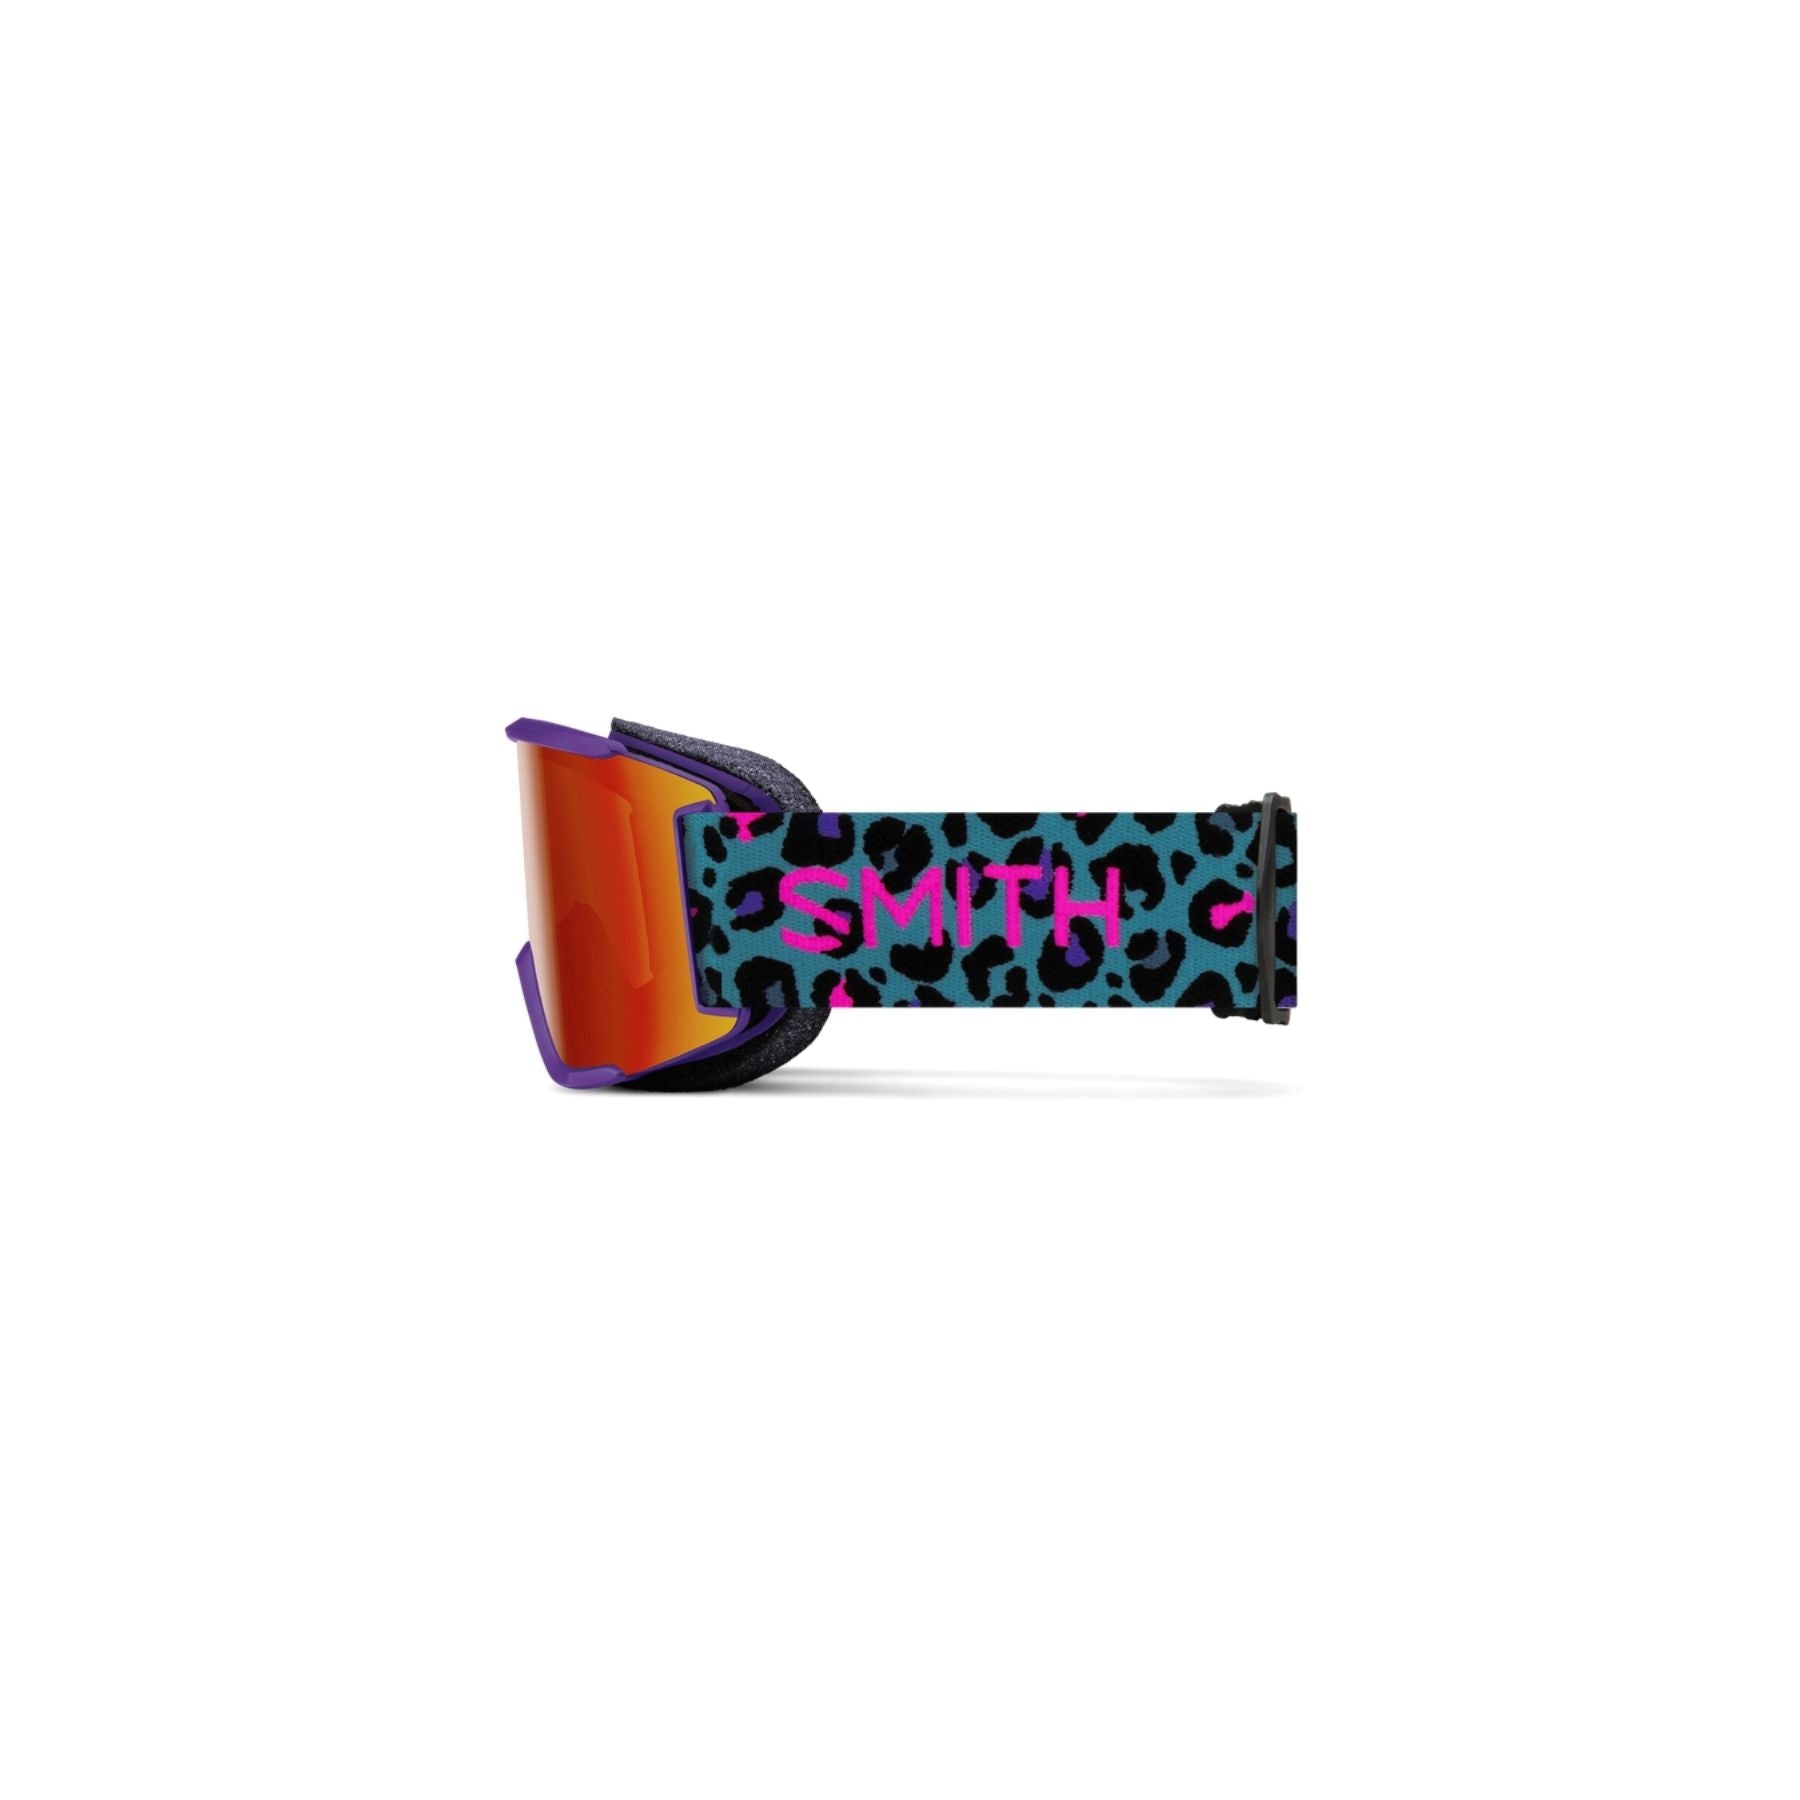 Smith Squad S Goggle In Purple Haze Neon Cheetah